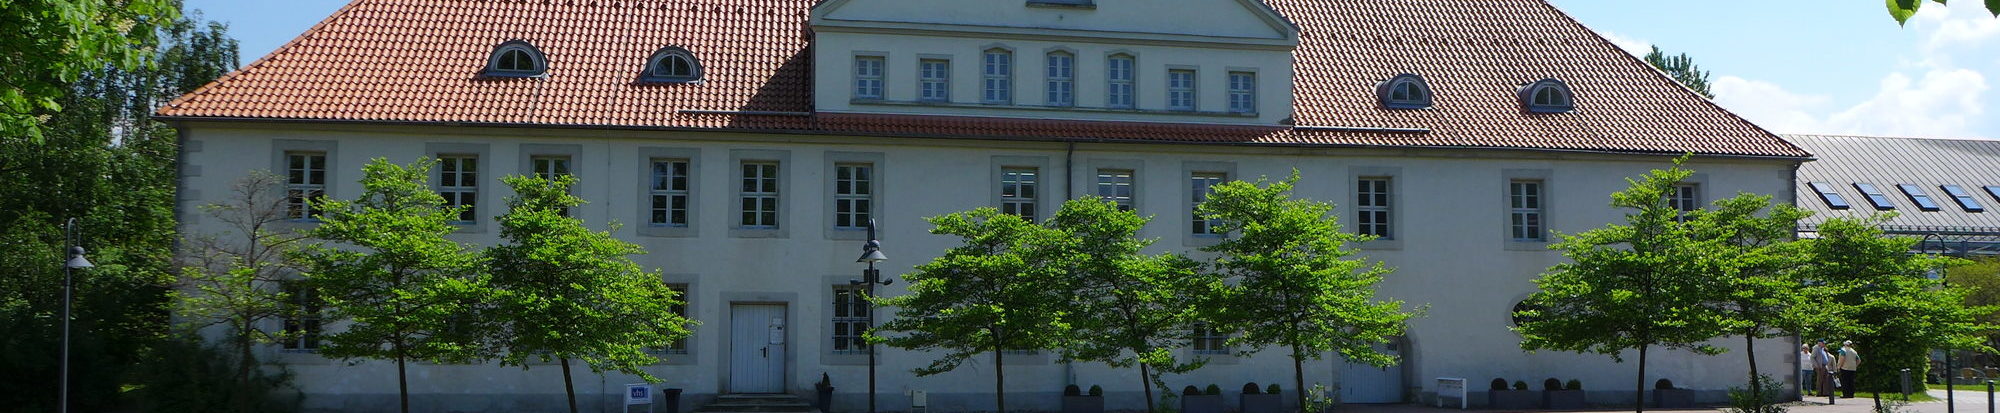 Kniestedter Herrenhaus